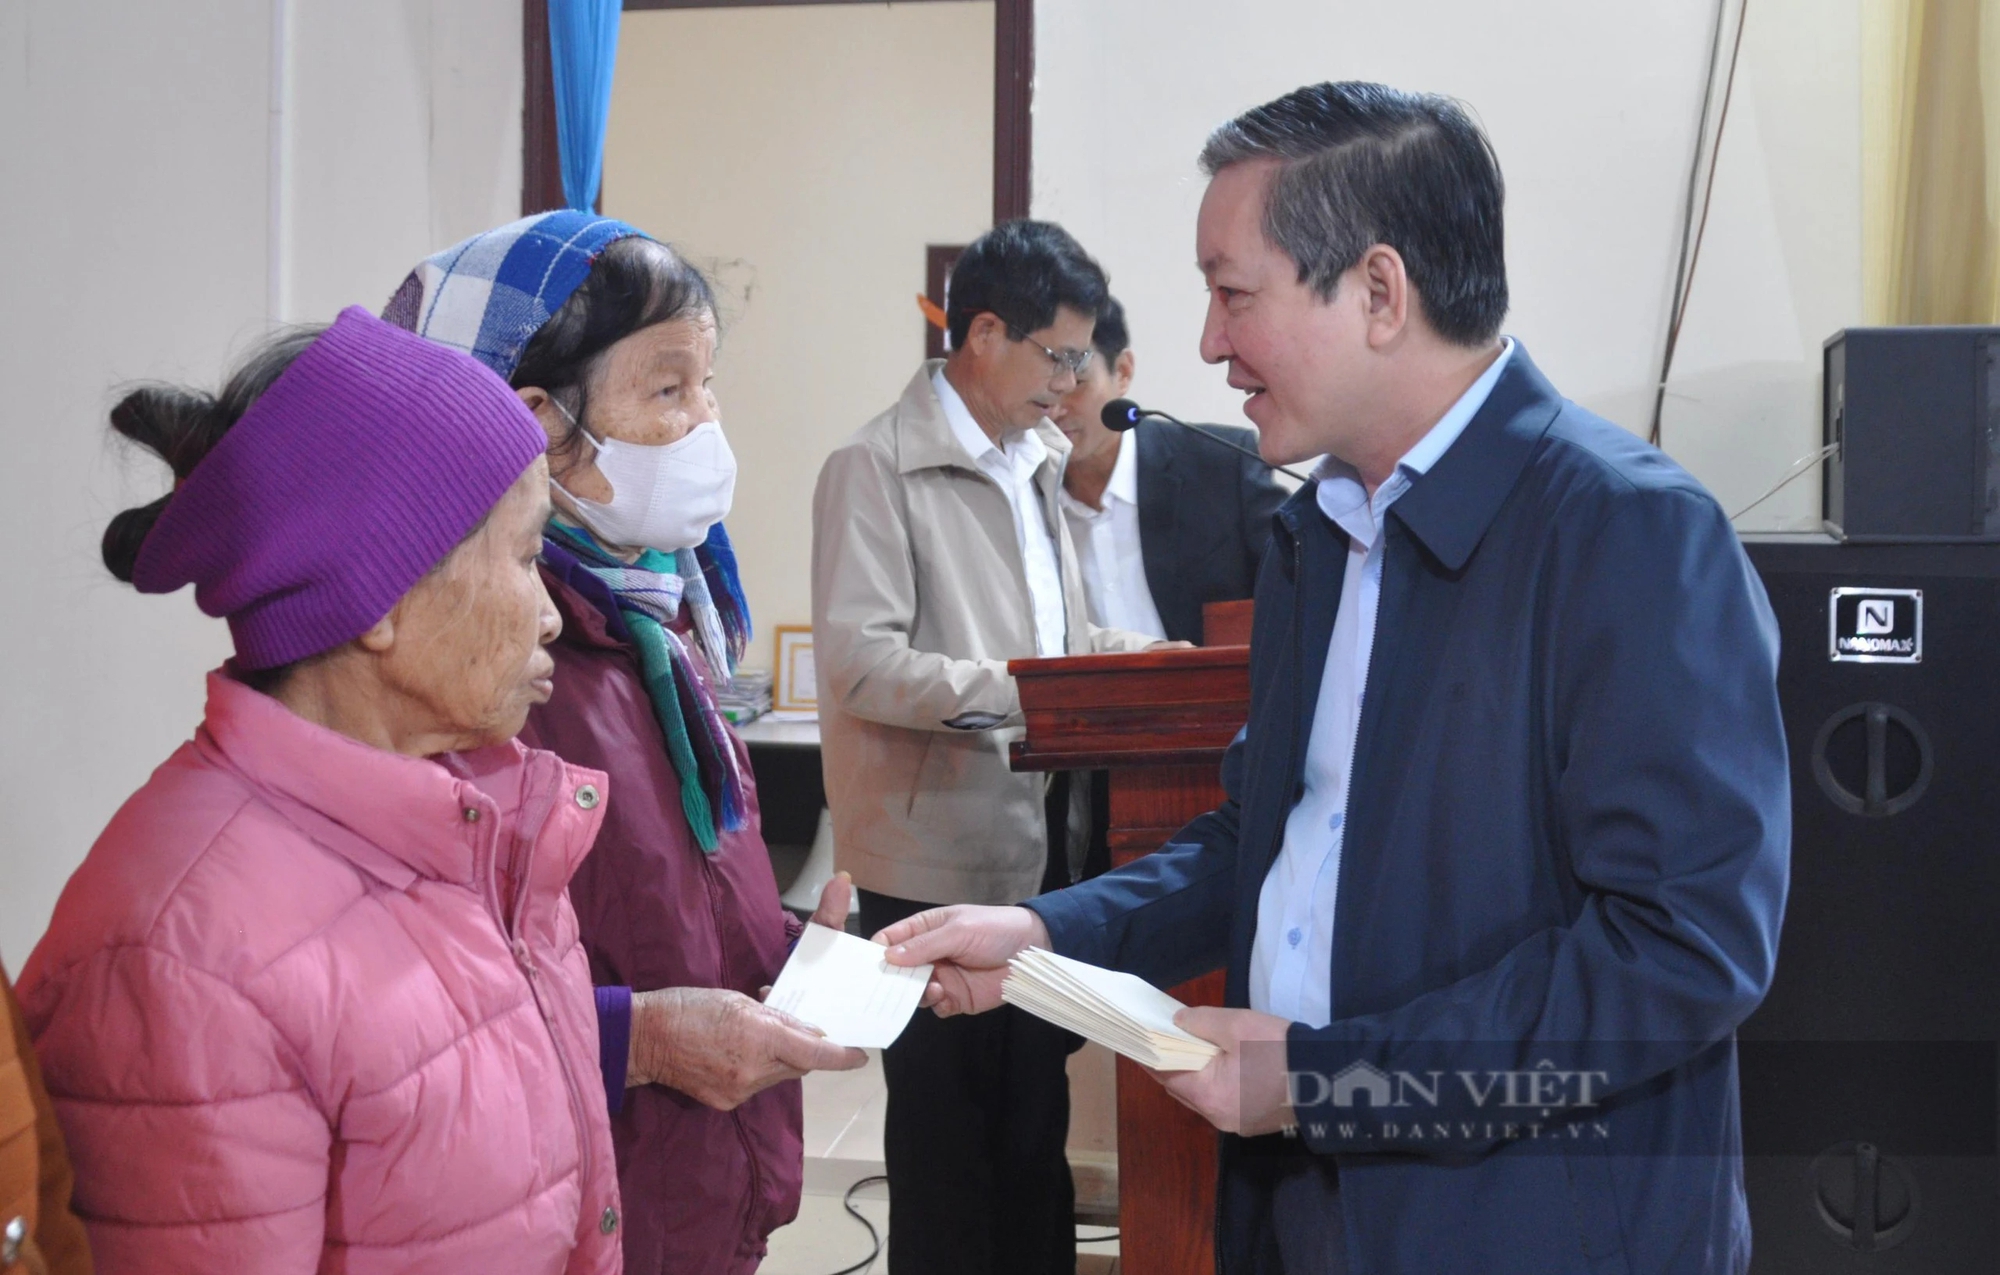 Chủ tịch Hội NDVN Lương Quốc Đoàn trao quà Tết cho người dân có hoàn cảnh khó khăn tại xã giáp biển Thái Bình- Ảnh 1.